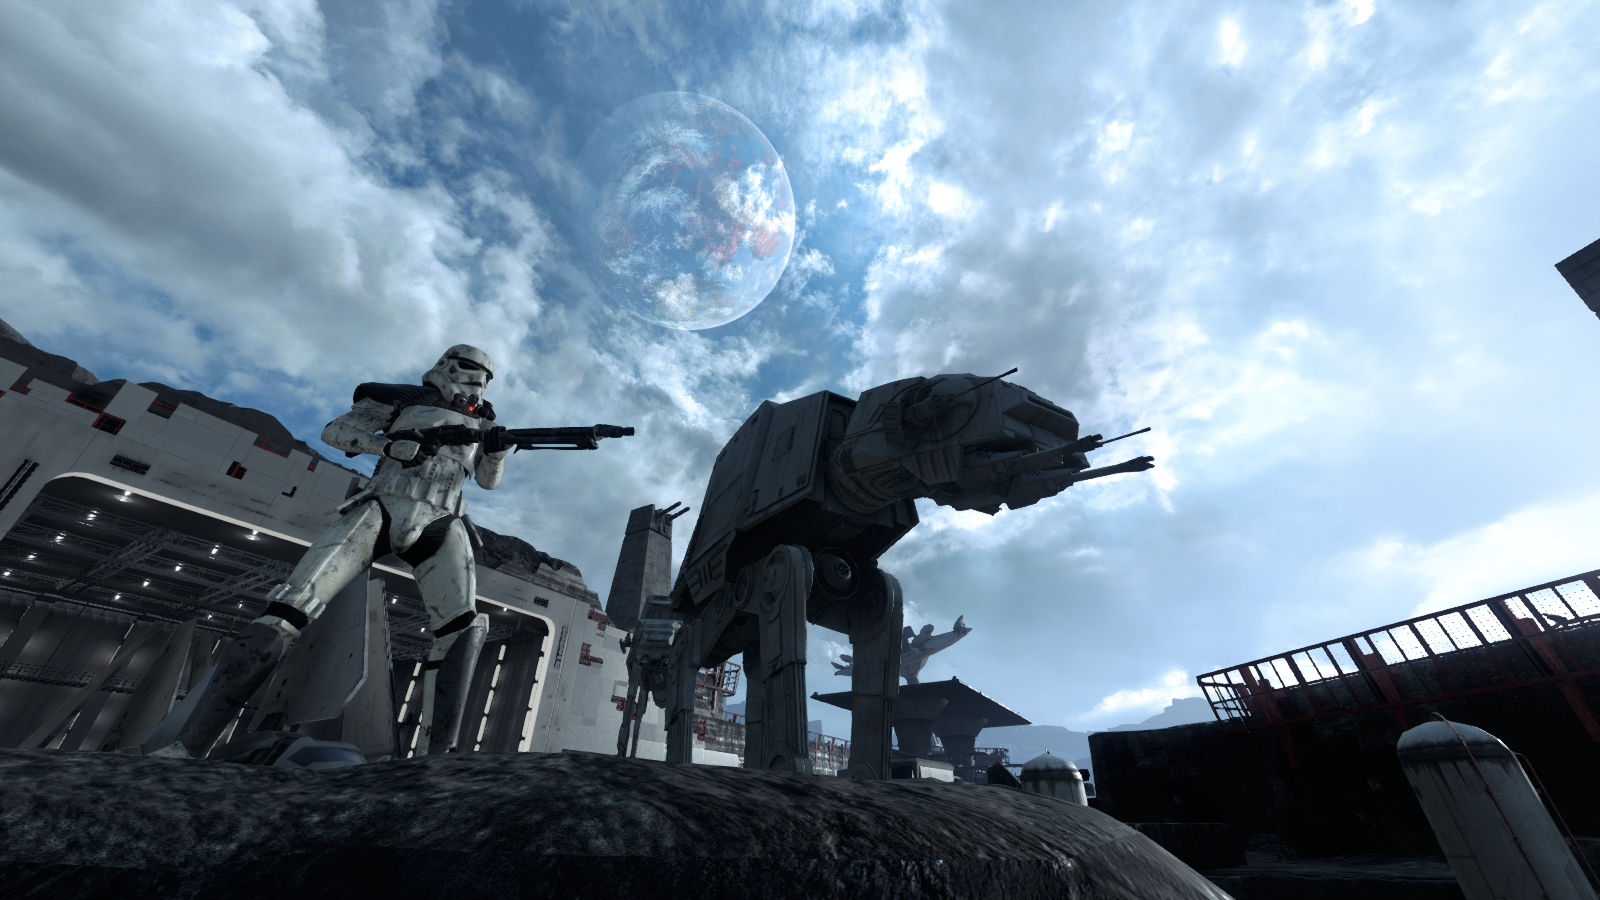 Star Wars Battlefront (2015) Picture by TheElite115